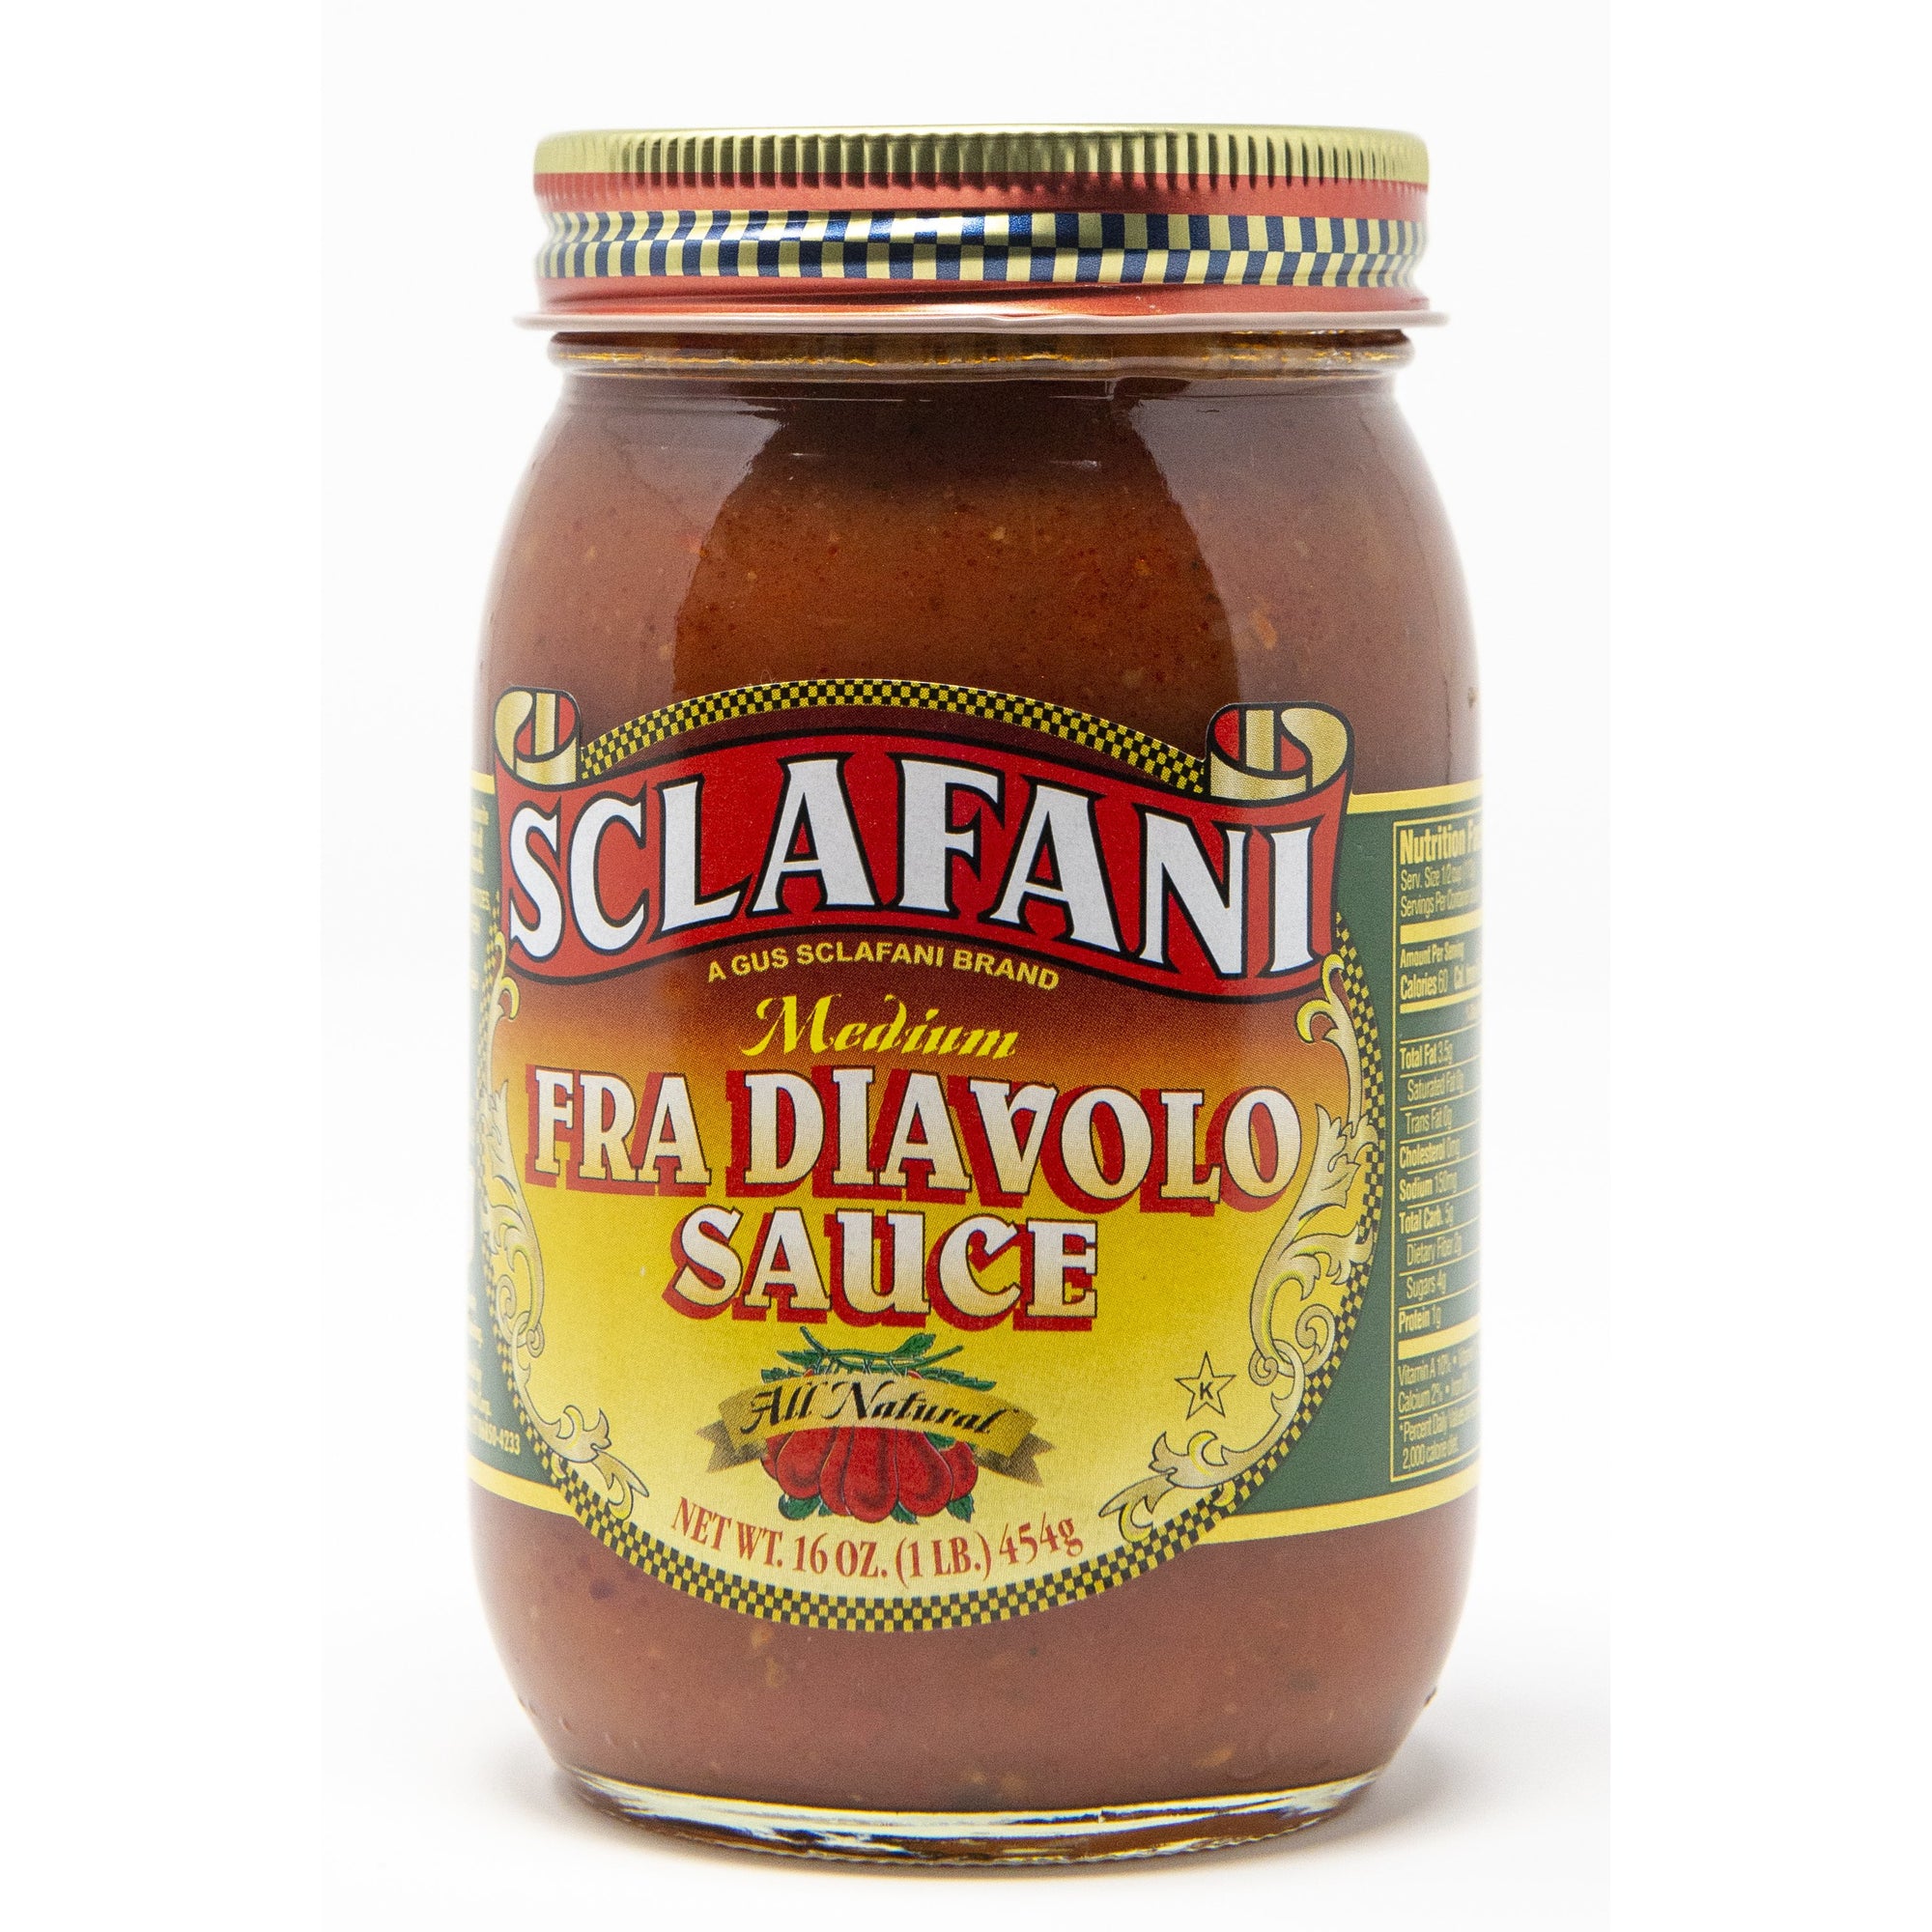 Sclafani Fra Diavolo Sauce 16 oz.